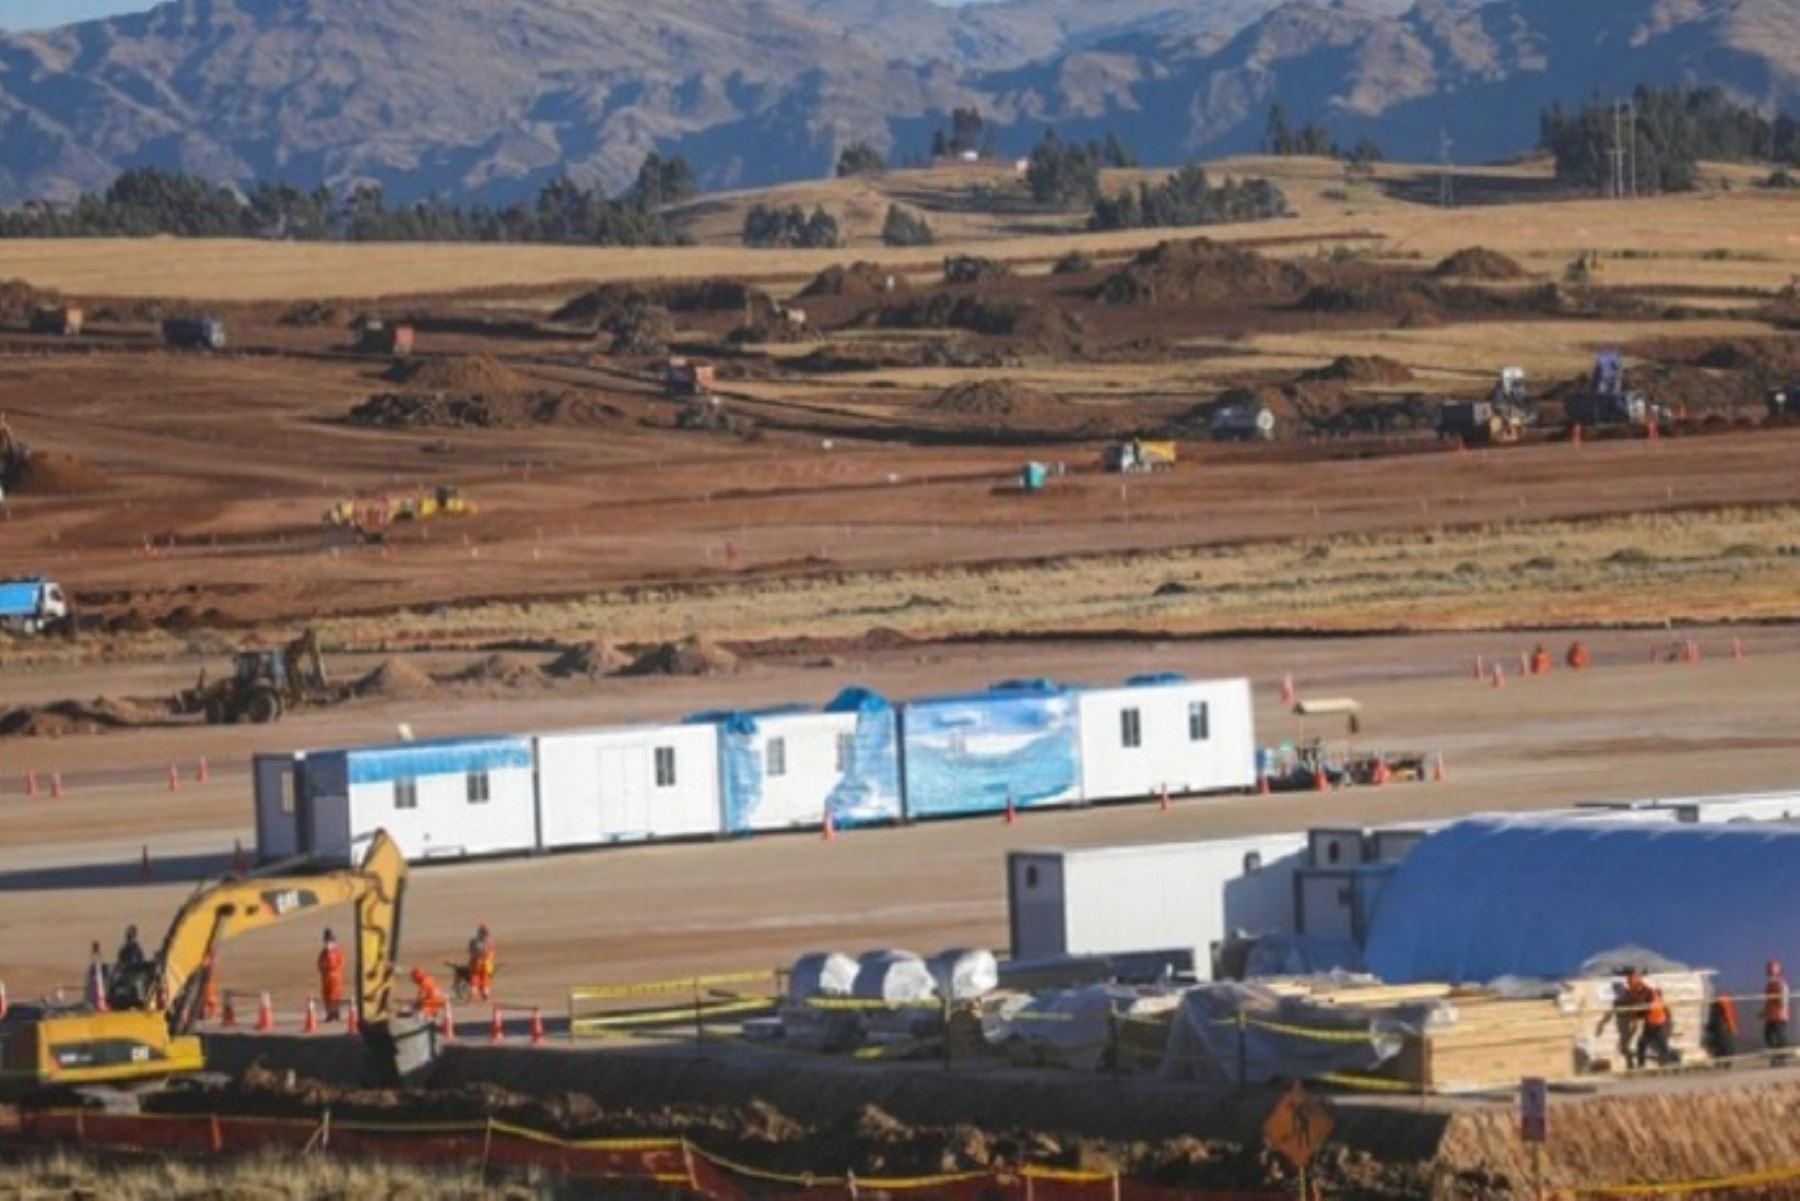 La infraestructura aeroportuaria demandará una inversión de US$ 427 millones, incluyendo el terminal de pasajeros, que será ocho veces más grande que el actual aeropuerto de Cusco, y deberá ejecutarse en 47 meses.